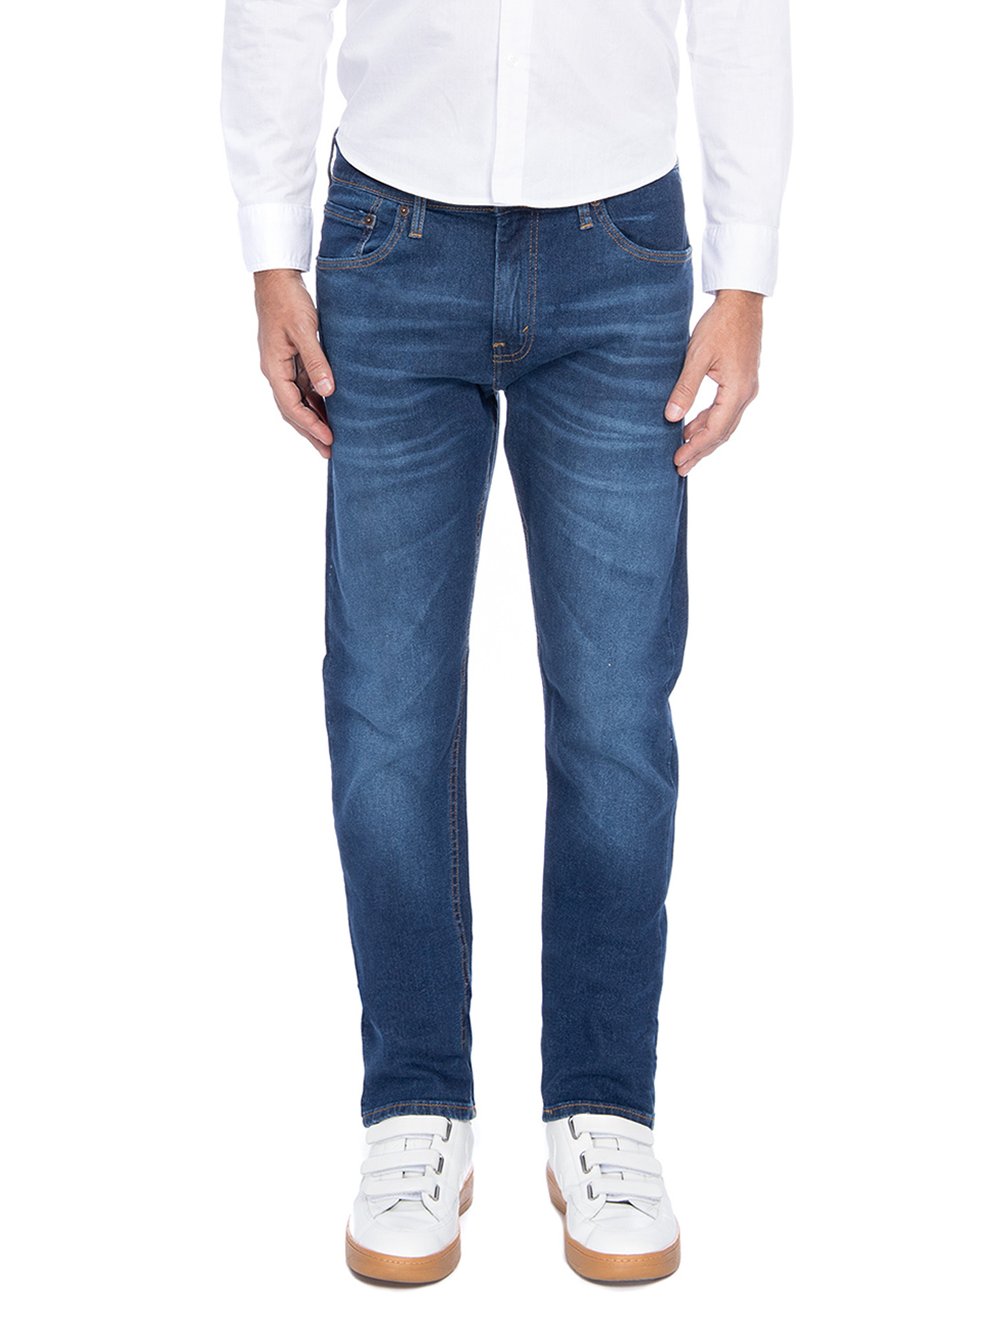 Calça Jeans Levis 512 Slim Taper Advanced Stretch